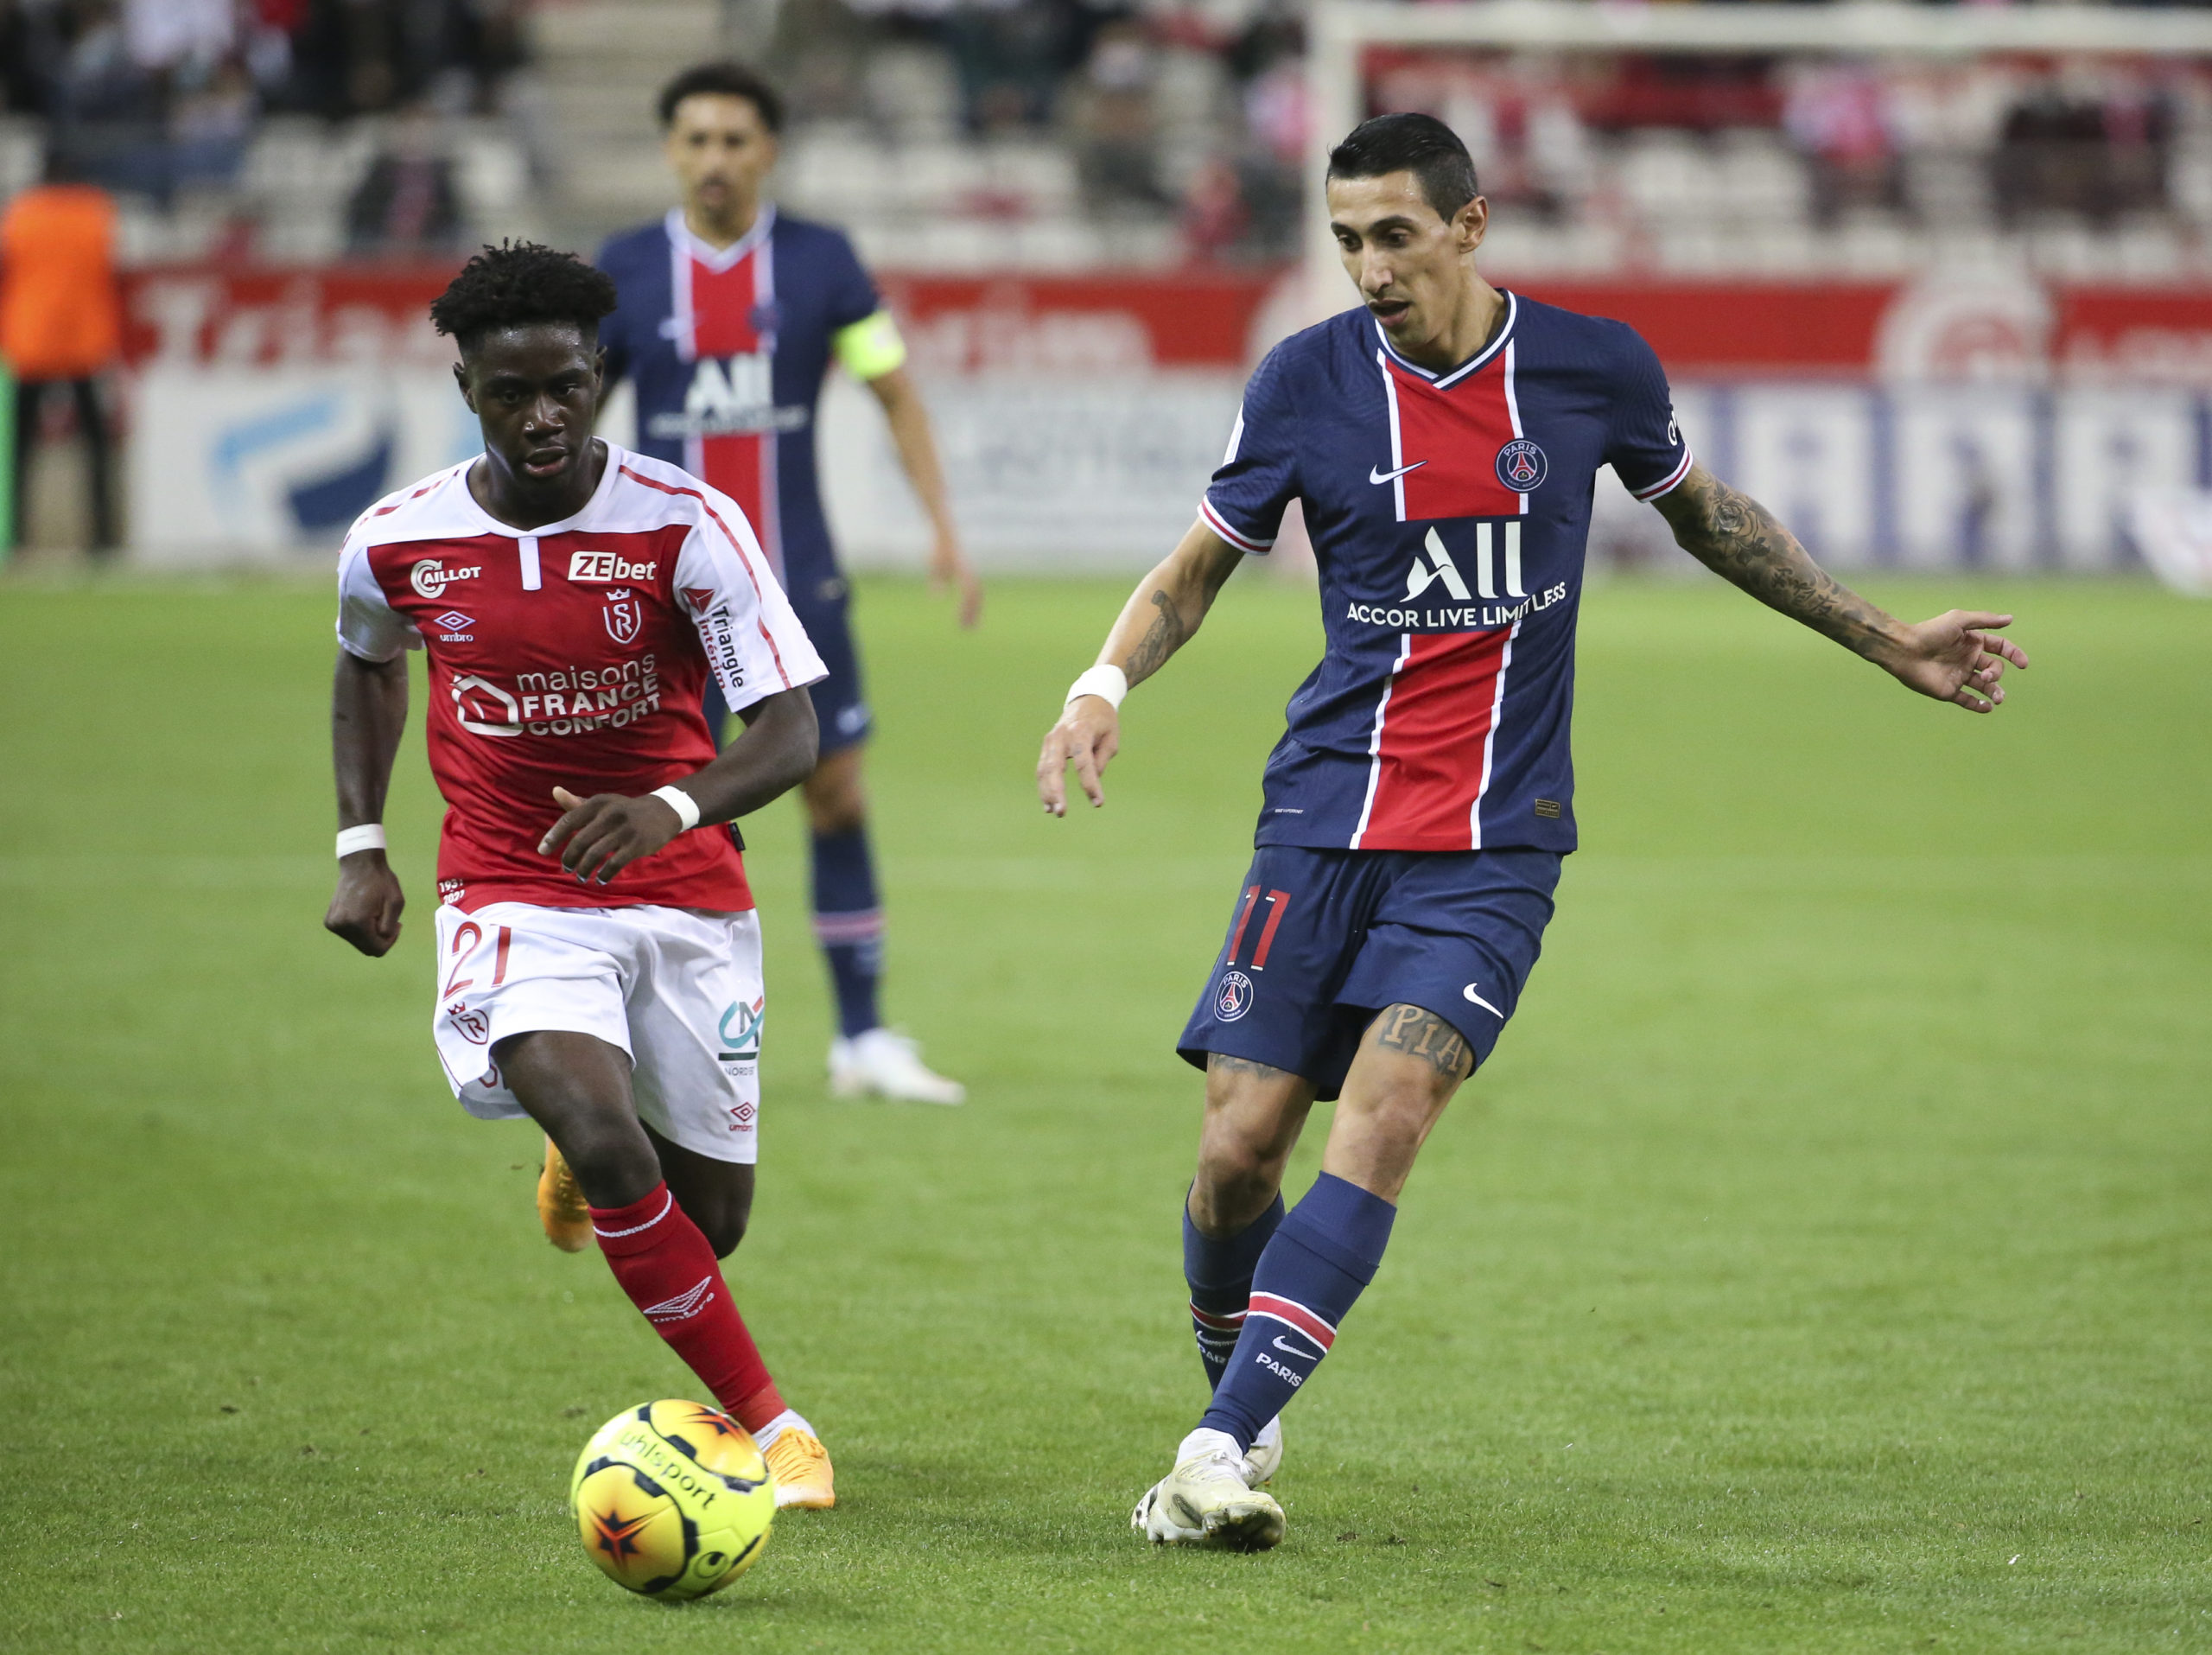 Ligue 1 hot-shot and Celtic target Nathanael Mbuku struggles after transfer link